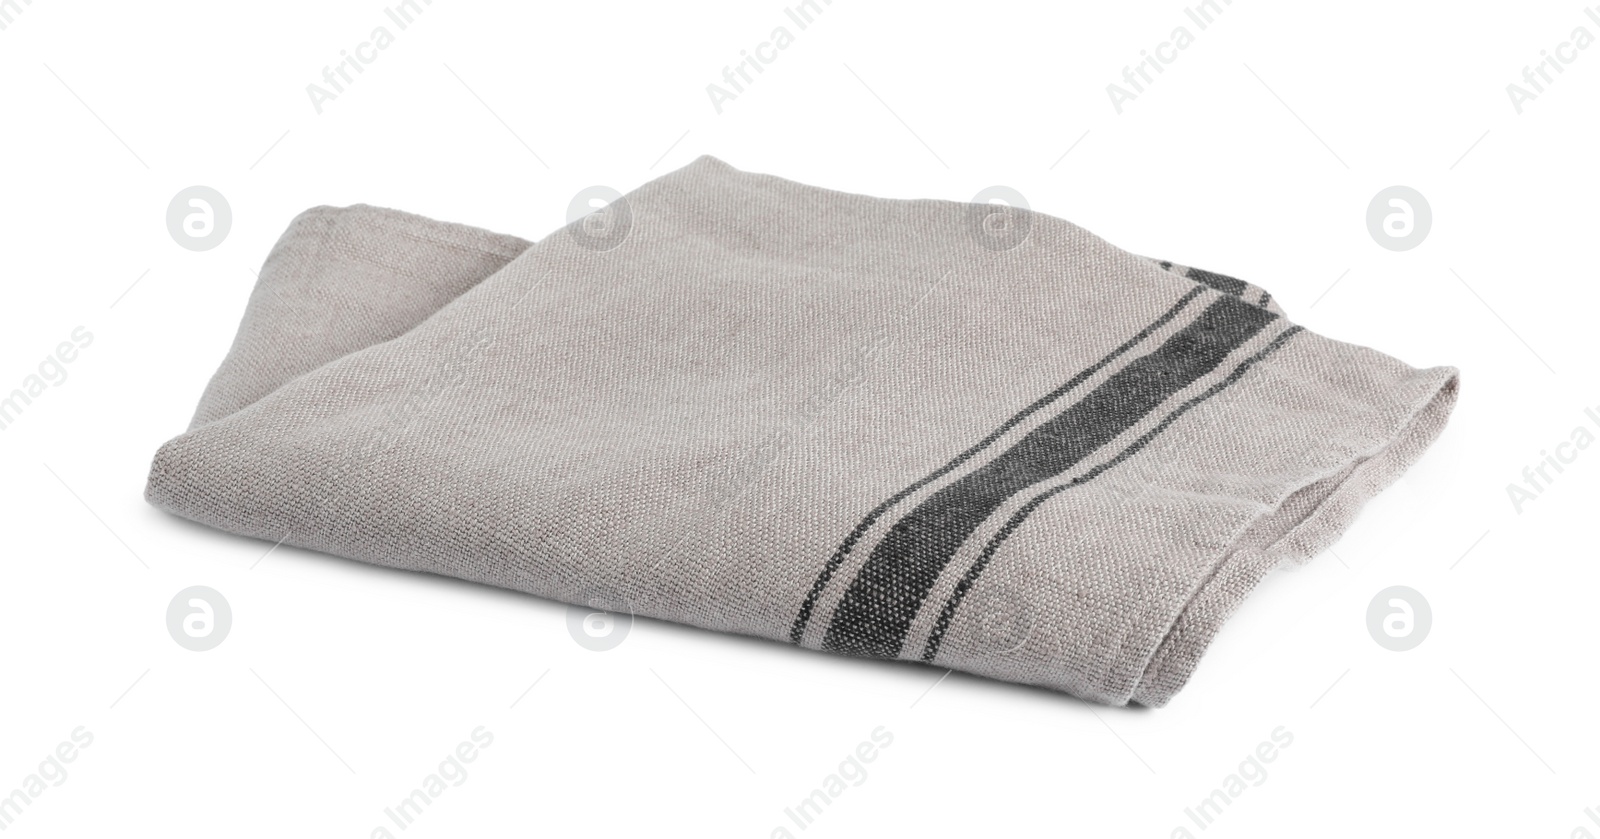 Photo of New grey fabric napkin on white background